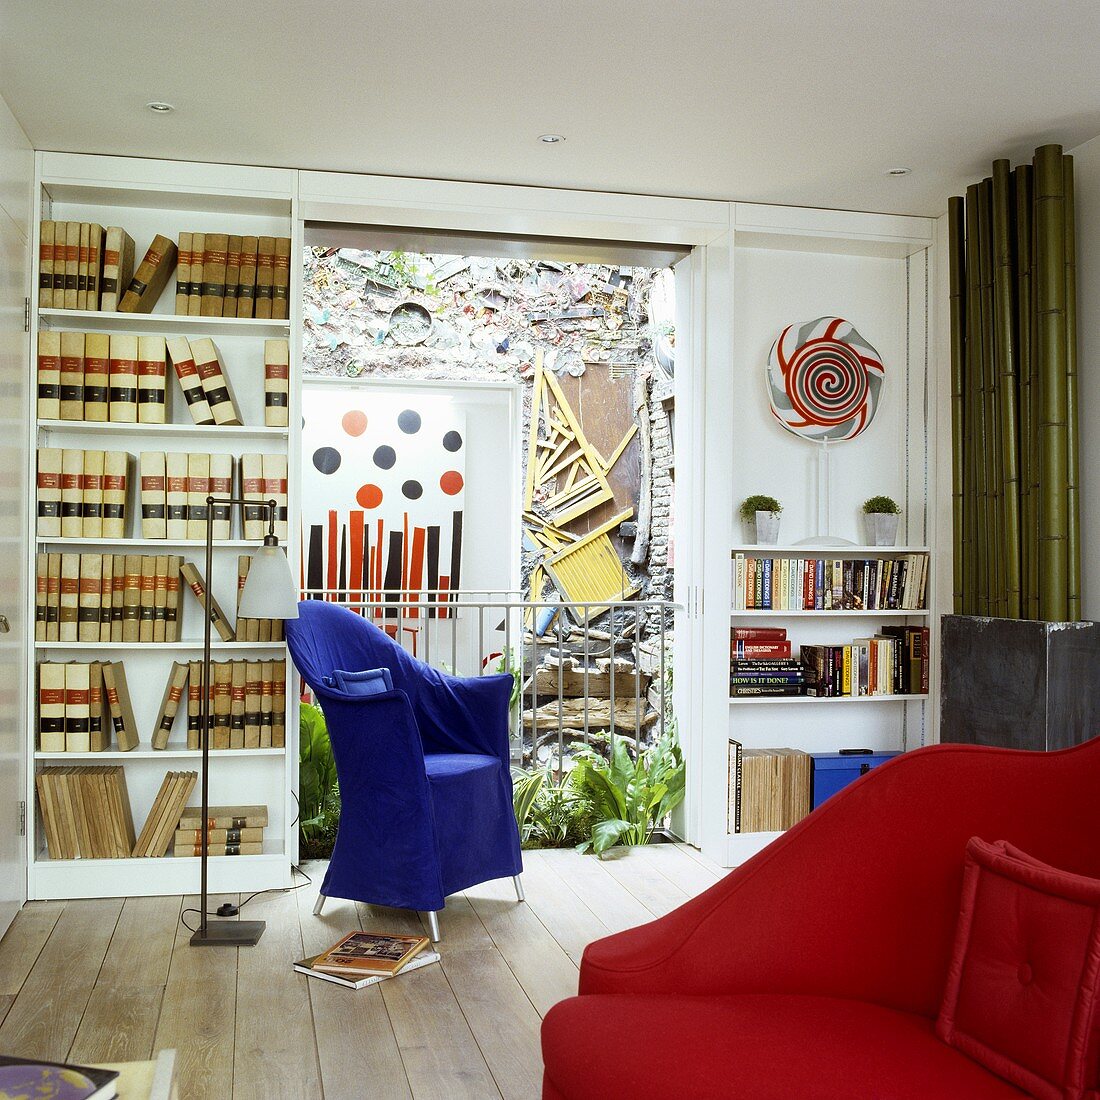 Wohnraum mit blauem Stuhl und Einbauregal mit Ausblick in den Innenhof auf Wandgestaltung